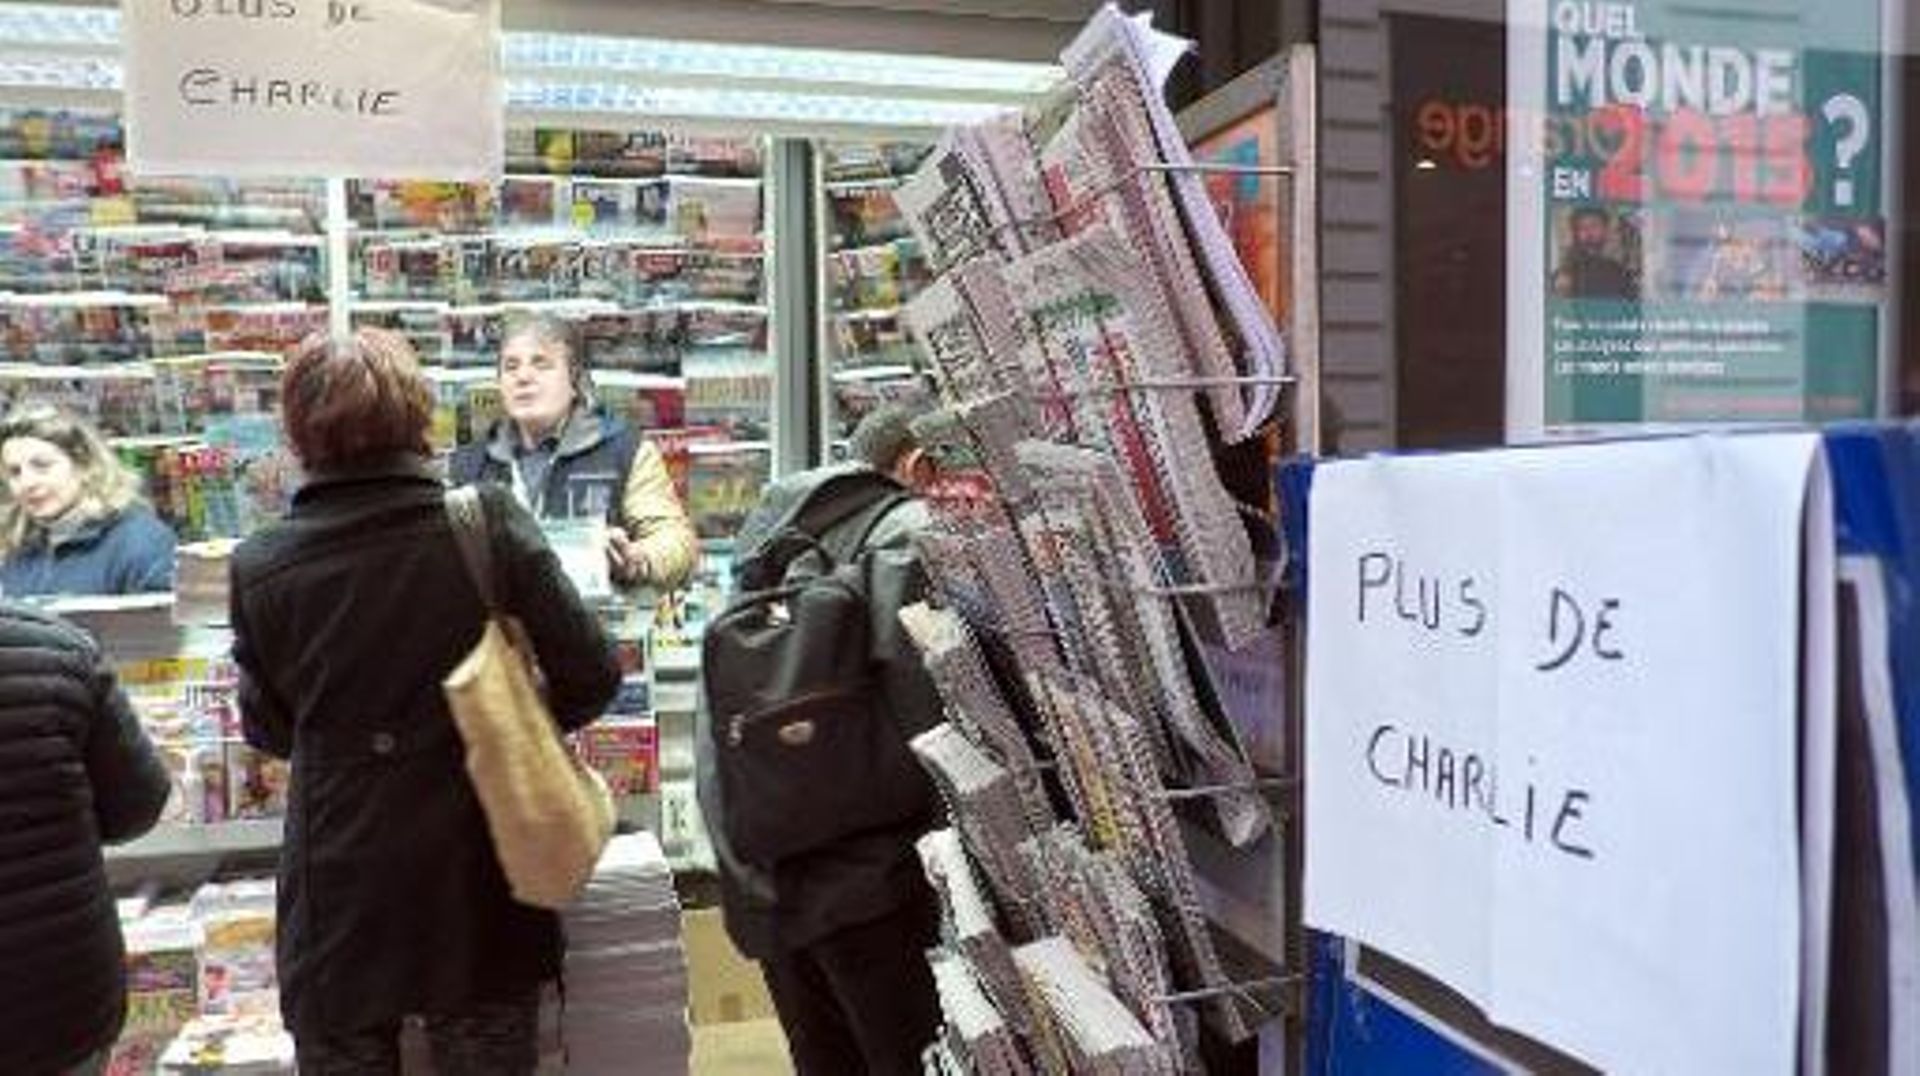 Un kiosque à journaux en rupture de "Charlie Hebdo" à Marseille, le 14 janvier 2015